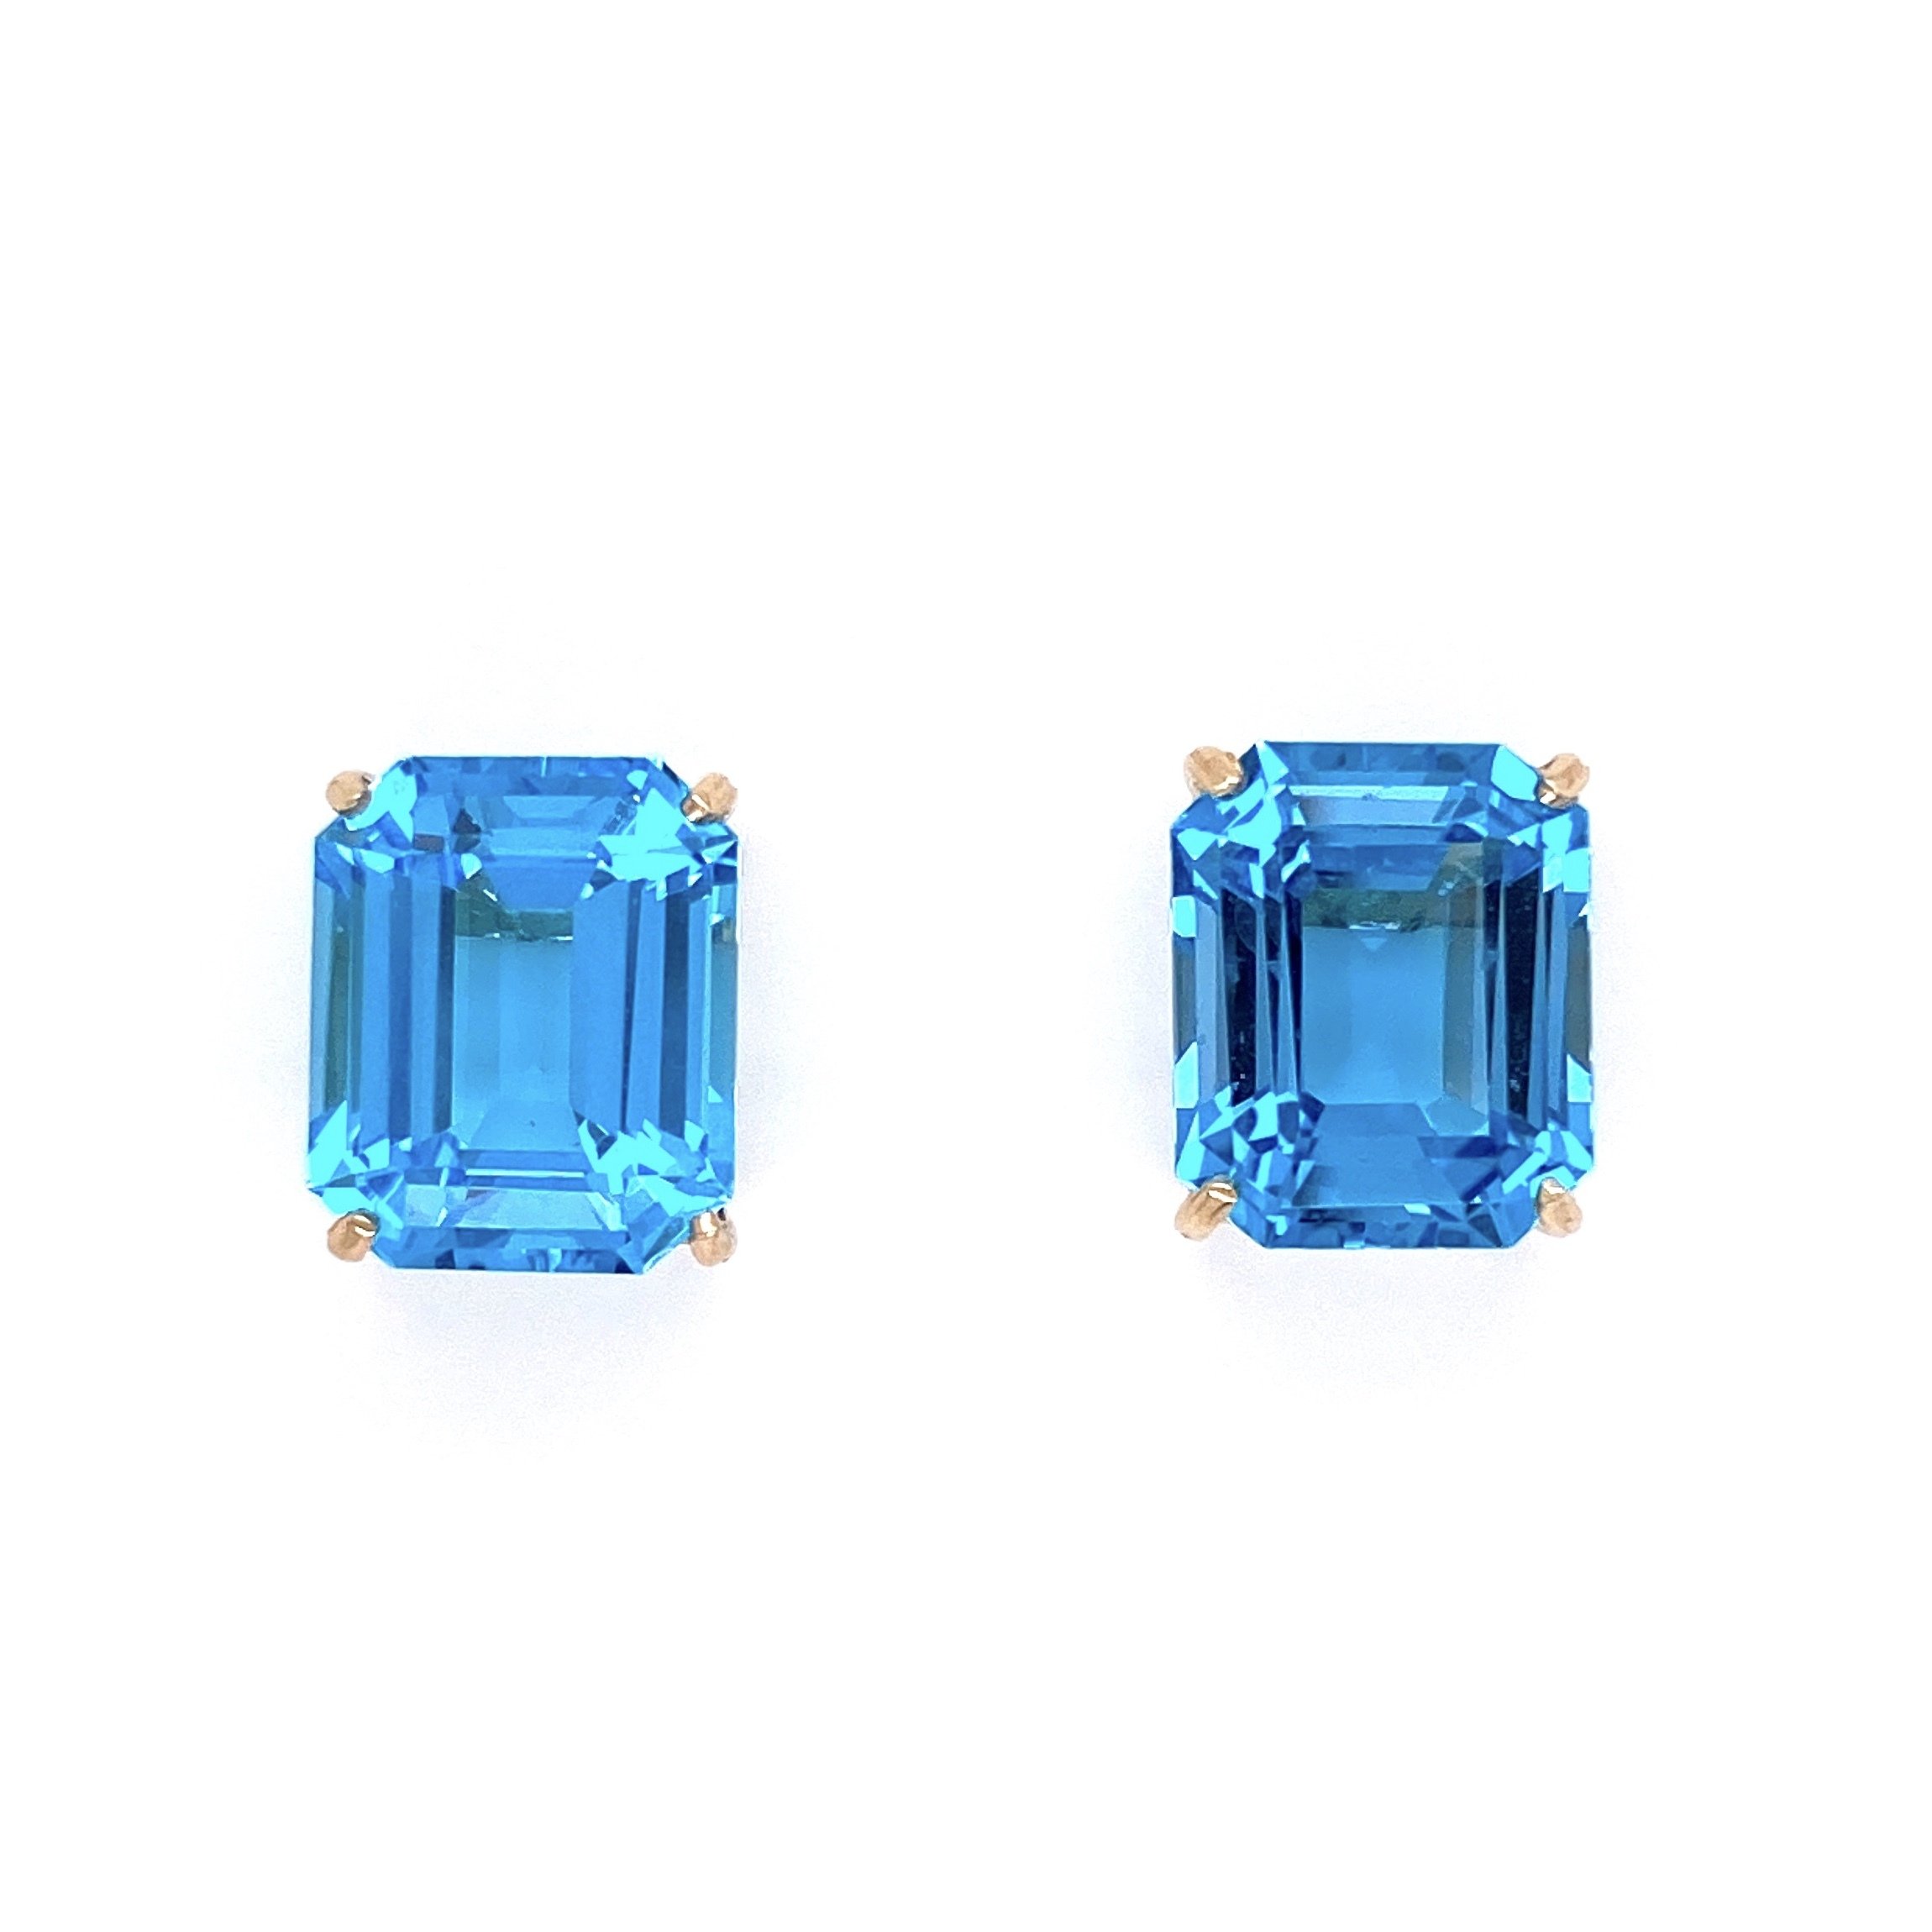 14K YG Emerald Cut 10tcw Blue Topaz Earrings 3.9g, .5"